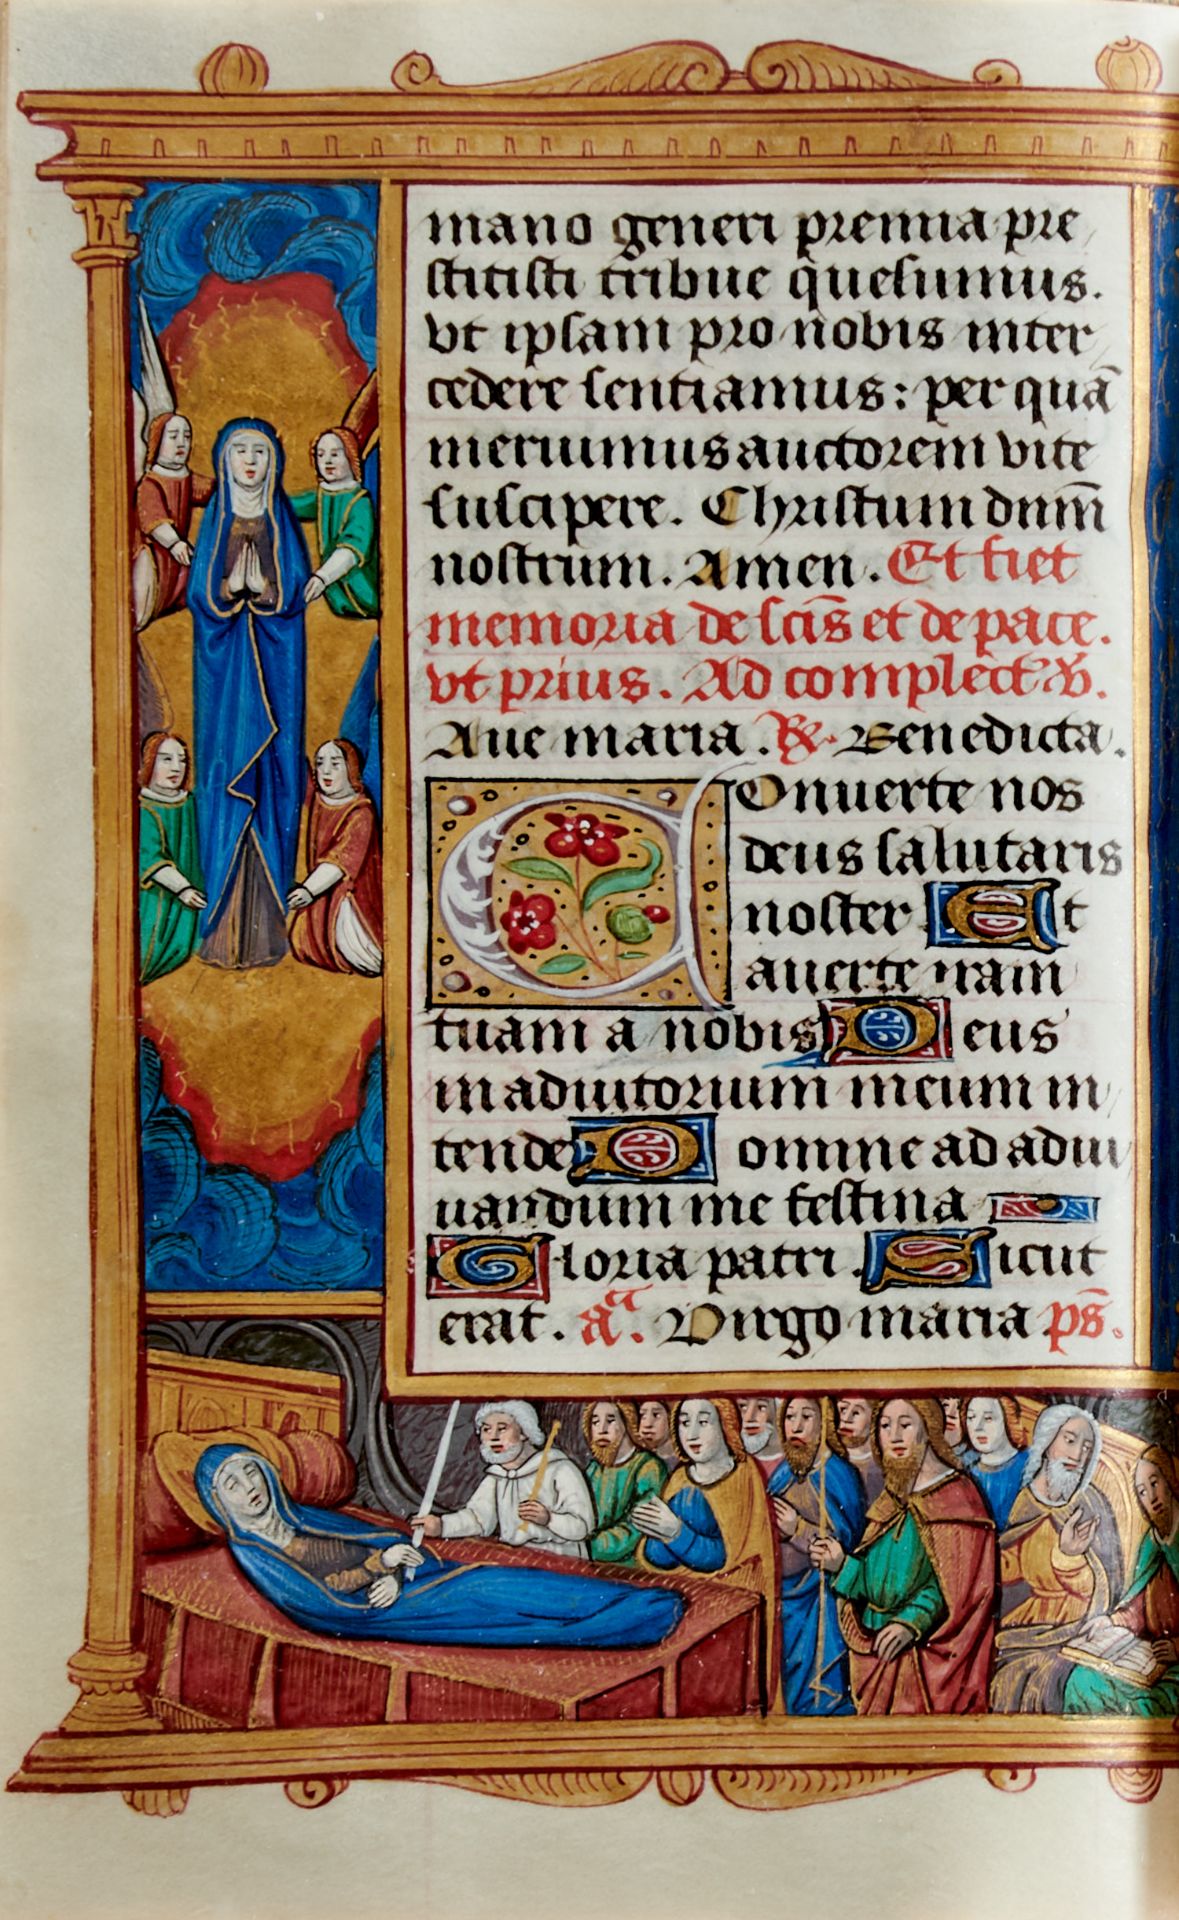 Pariser Stundenbuch. Lateinische Handschrift auf Pergament. Paris, um 1500. Ca. 14 x 10 cm. - Bild 18 aus 26